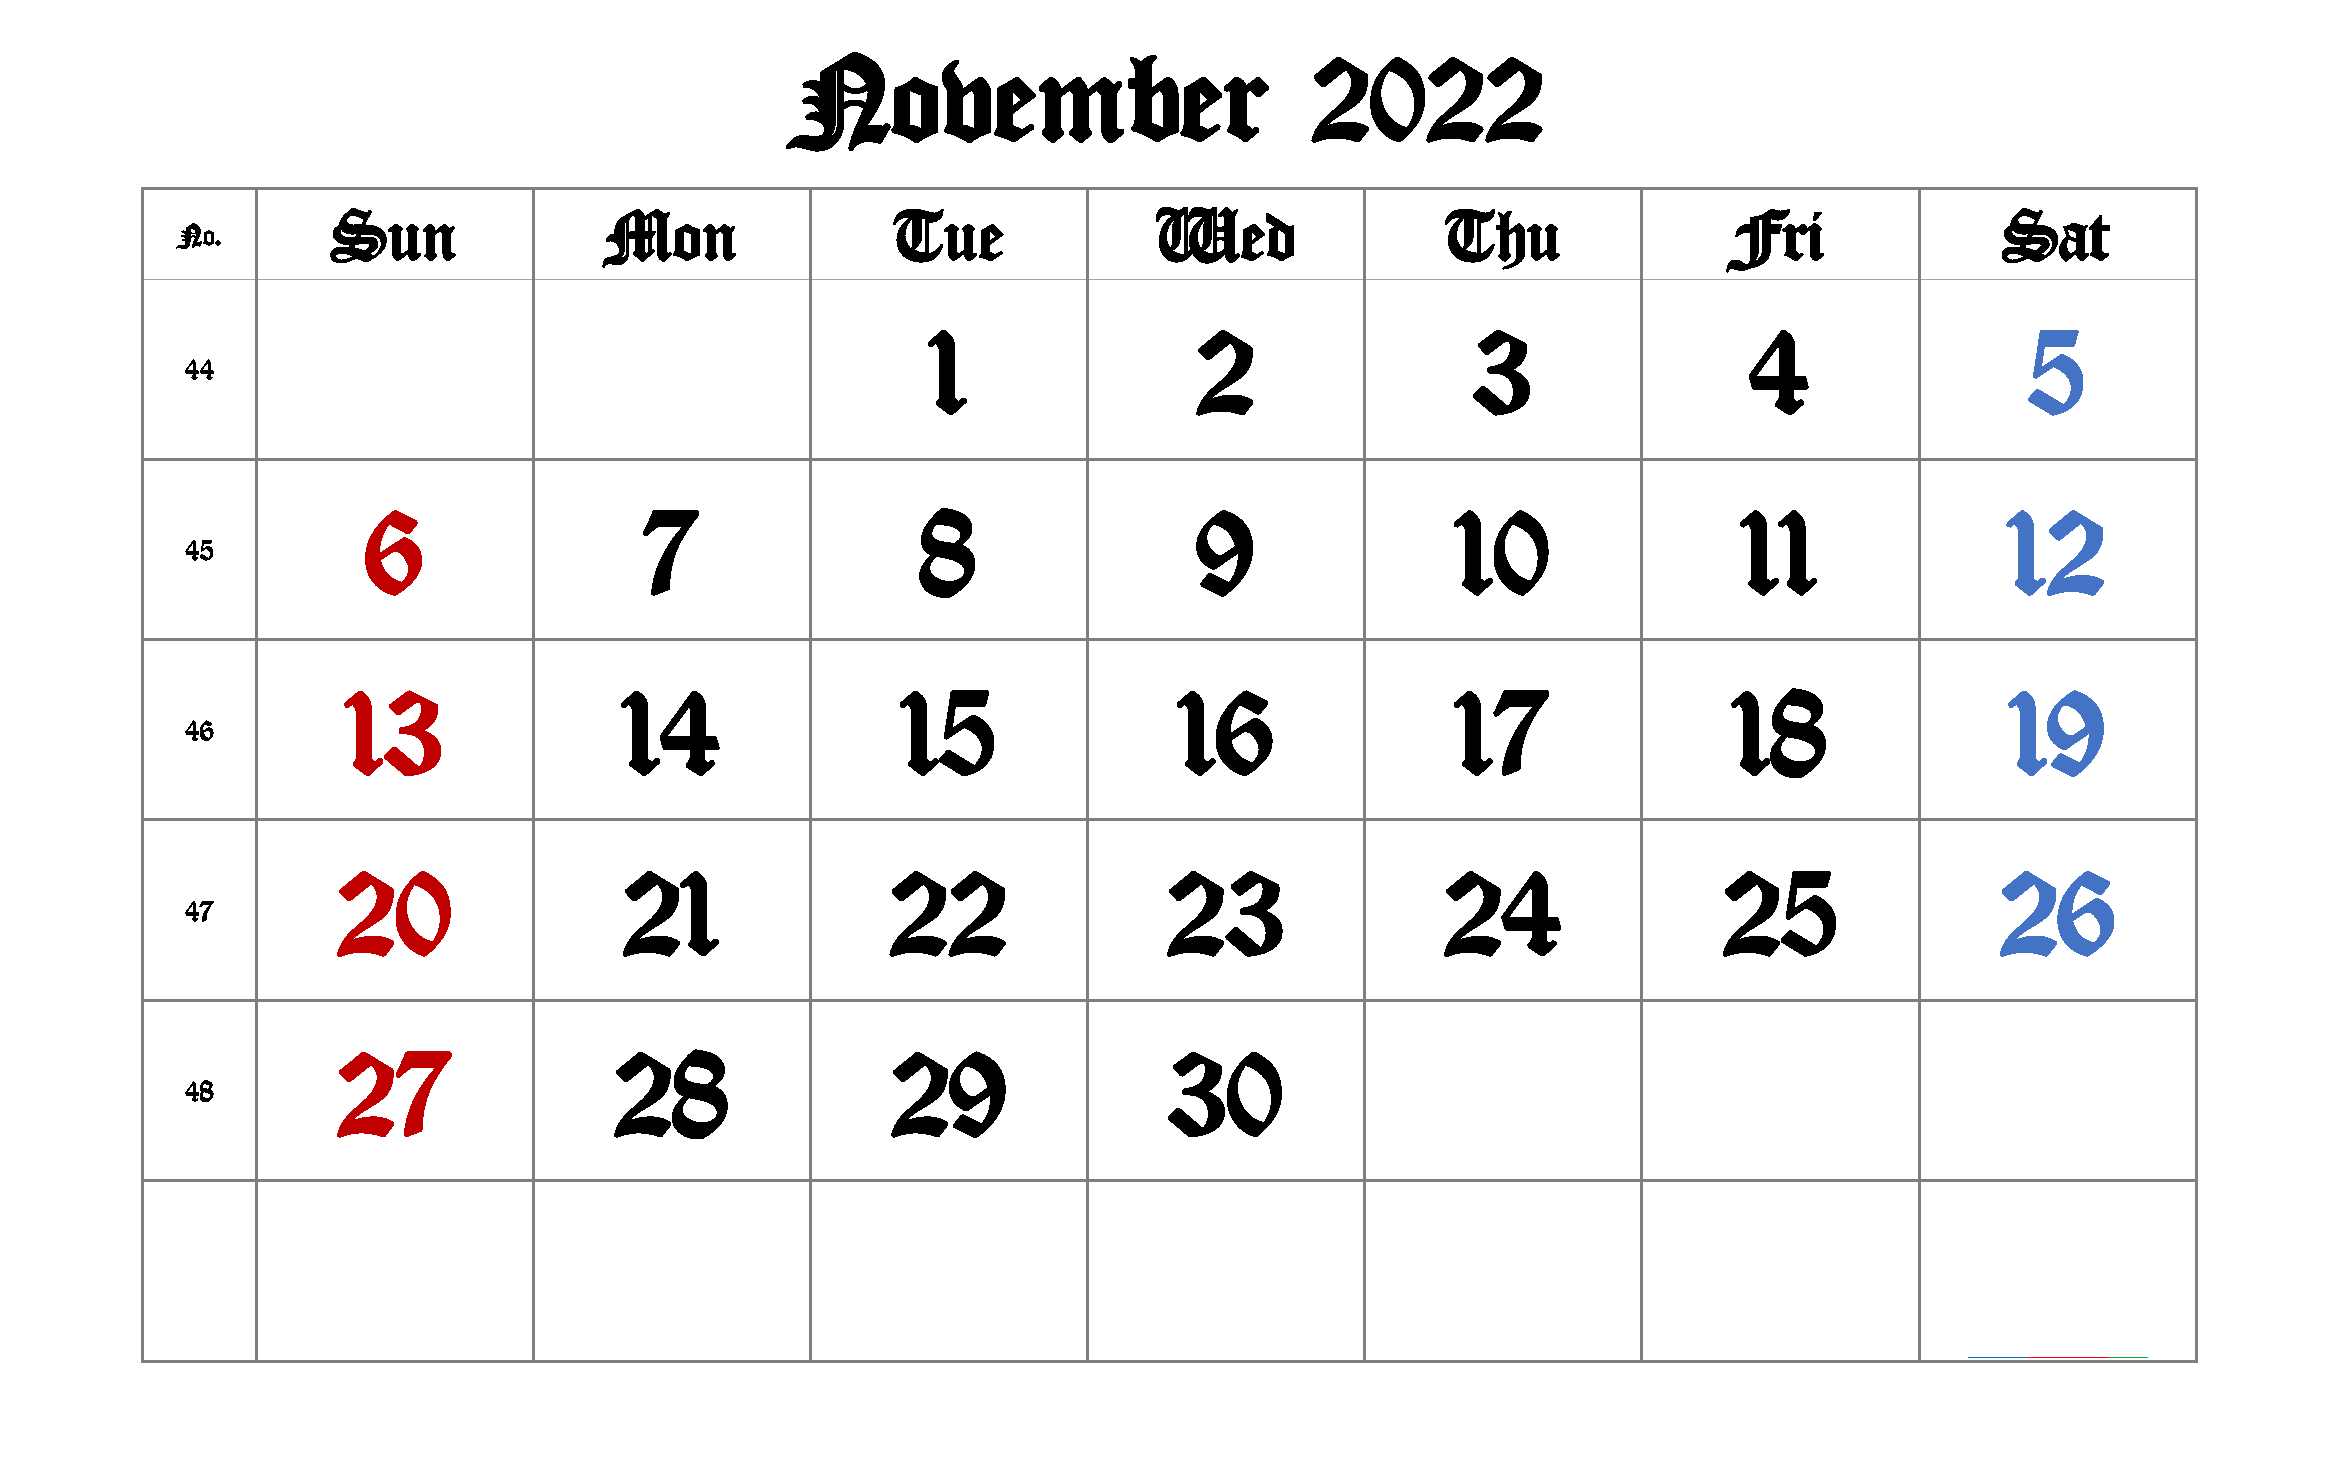 November 2022 Printable Calendar with Week Numbers